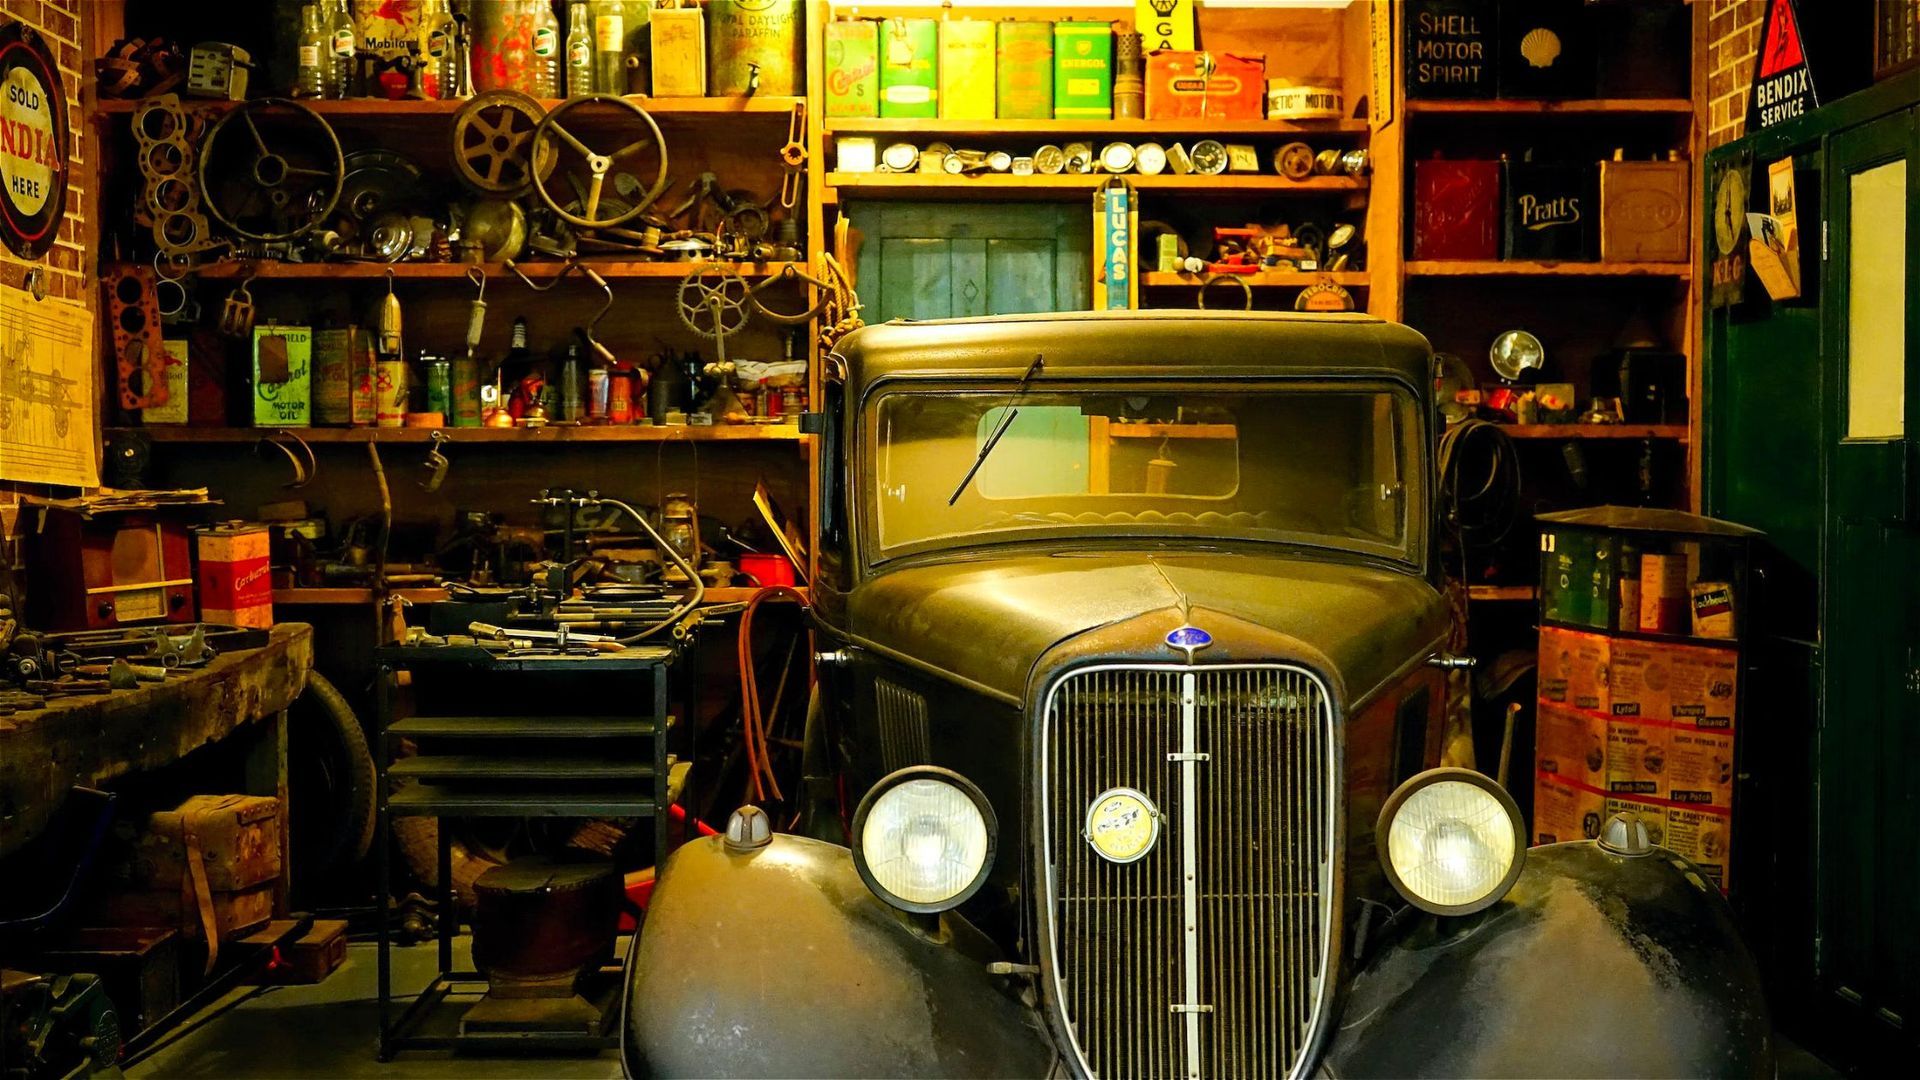 De-cluttering garage of junk